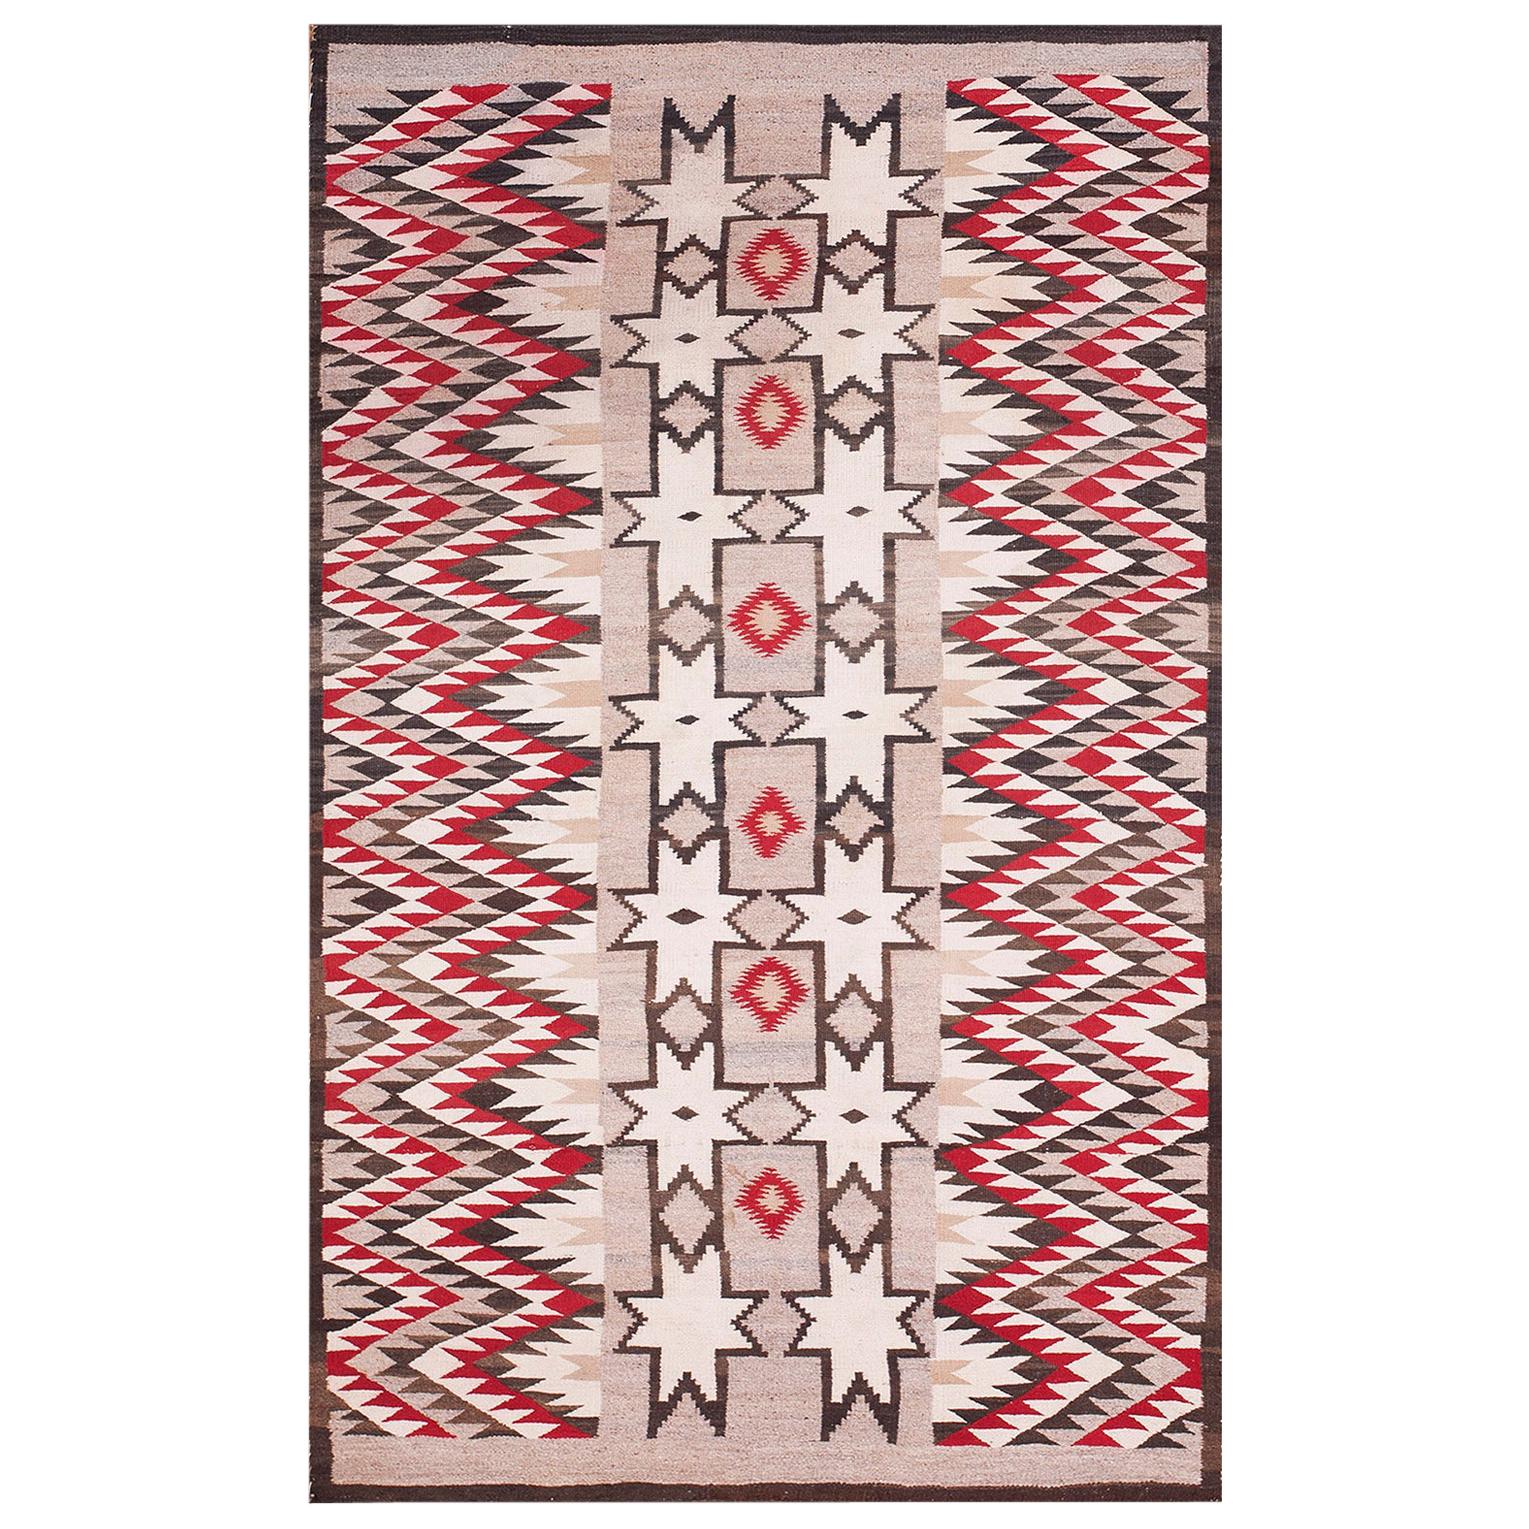 Amerikanischer Navajo-Teppich des frühen 20. Jahrhunderts ( 3'8" x 5'10" - 112 x 178)